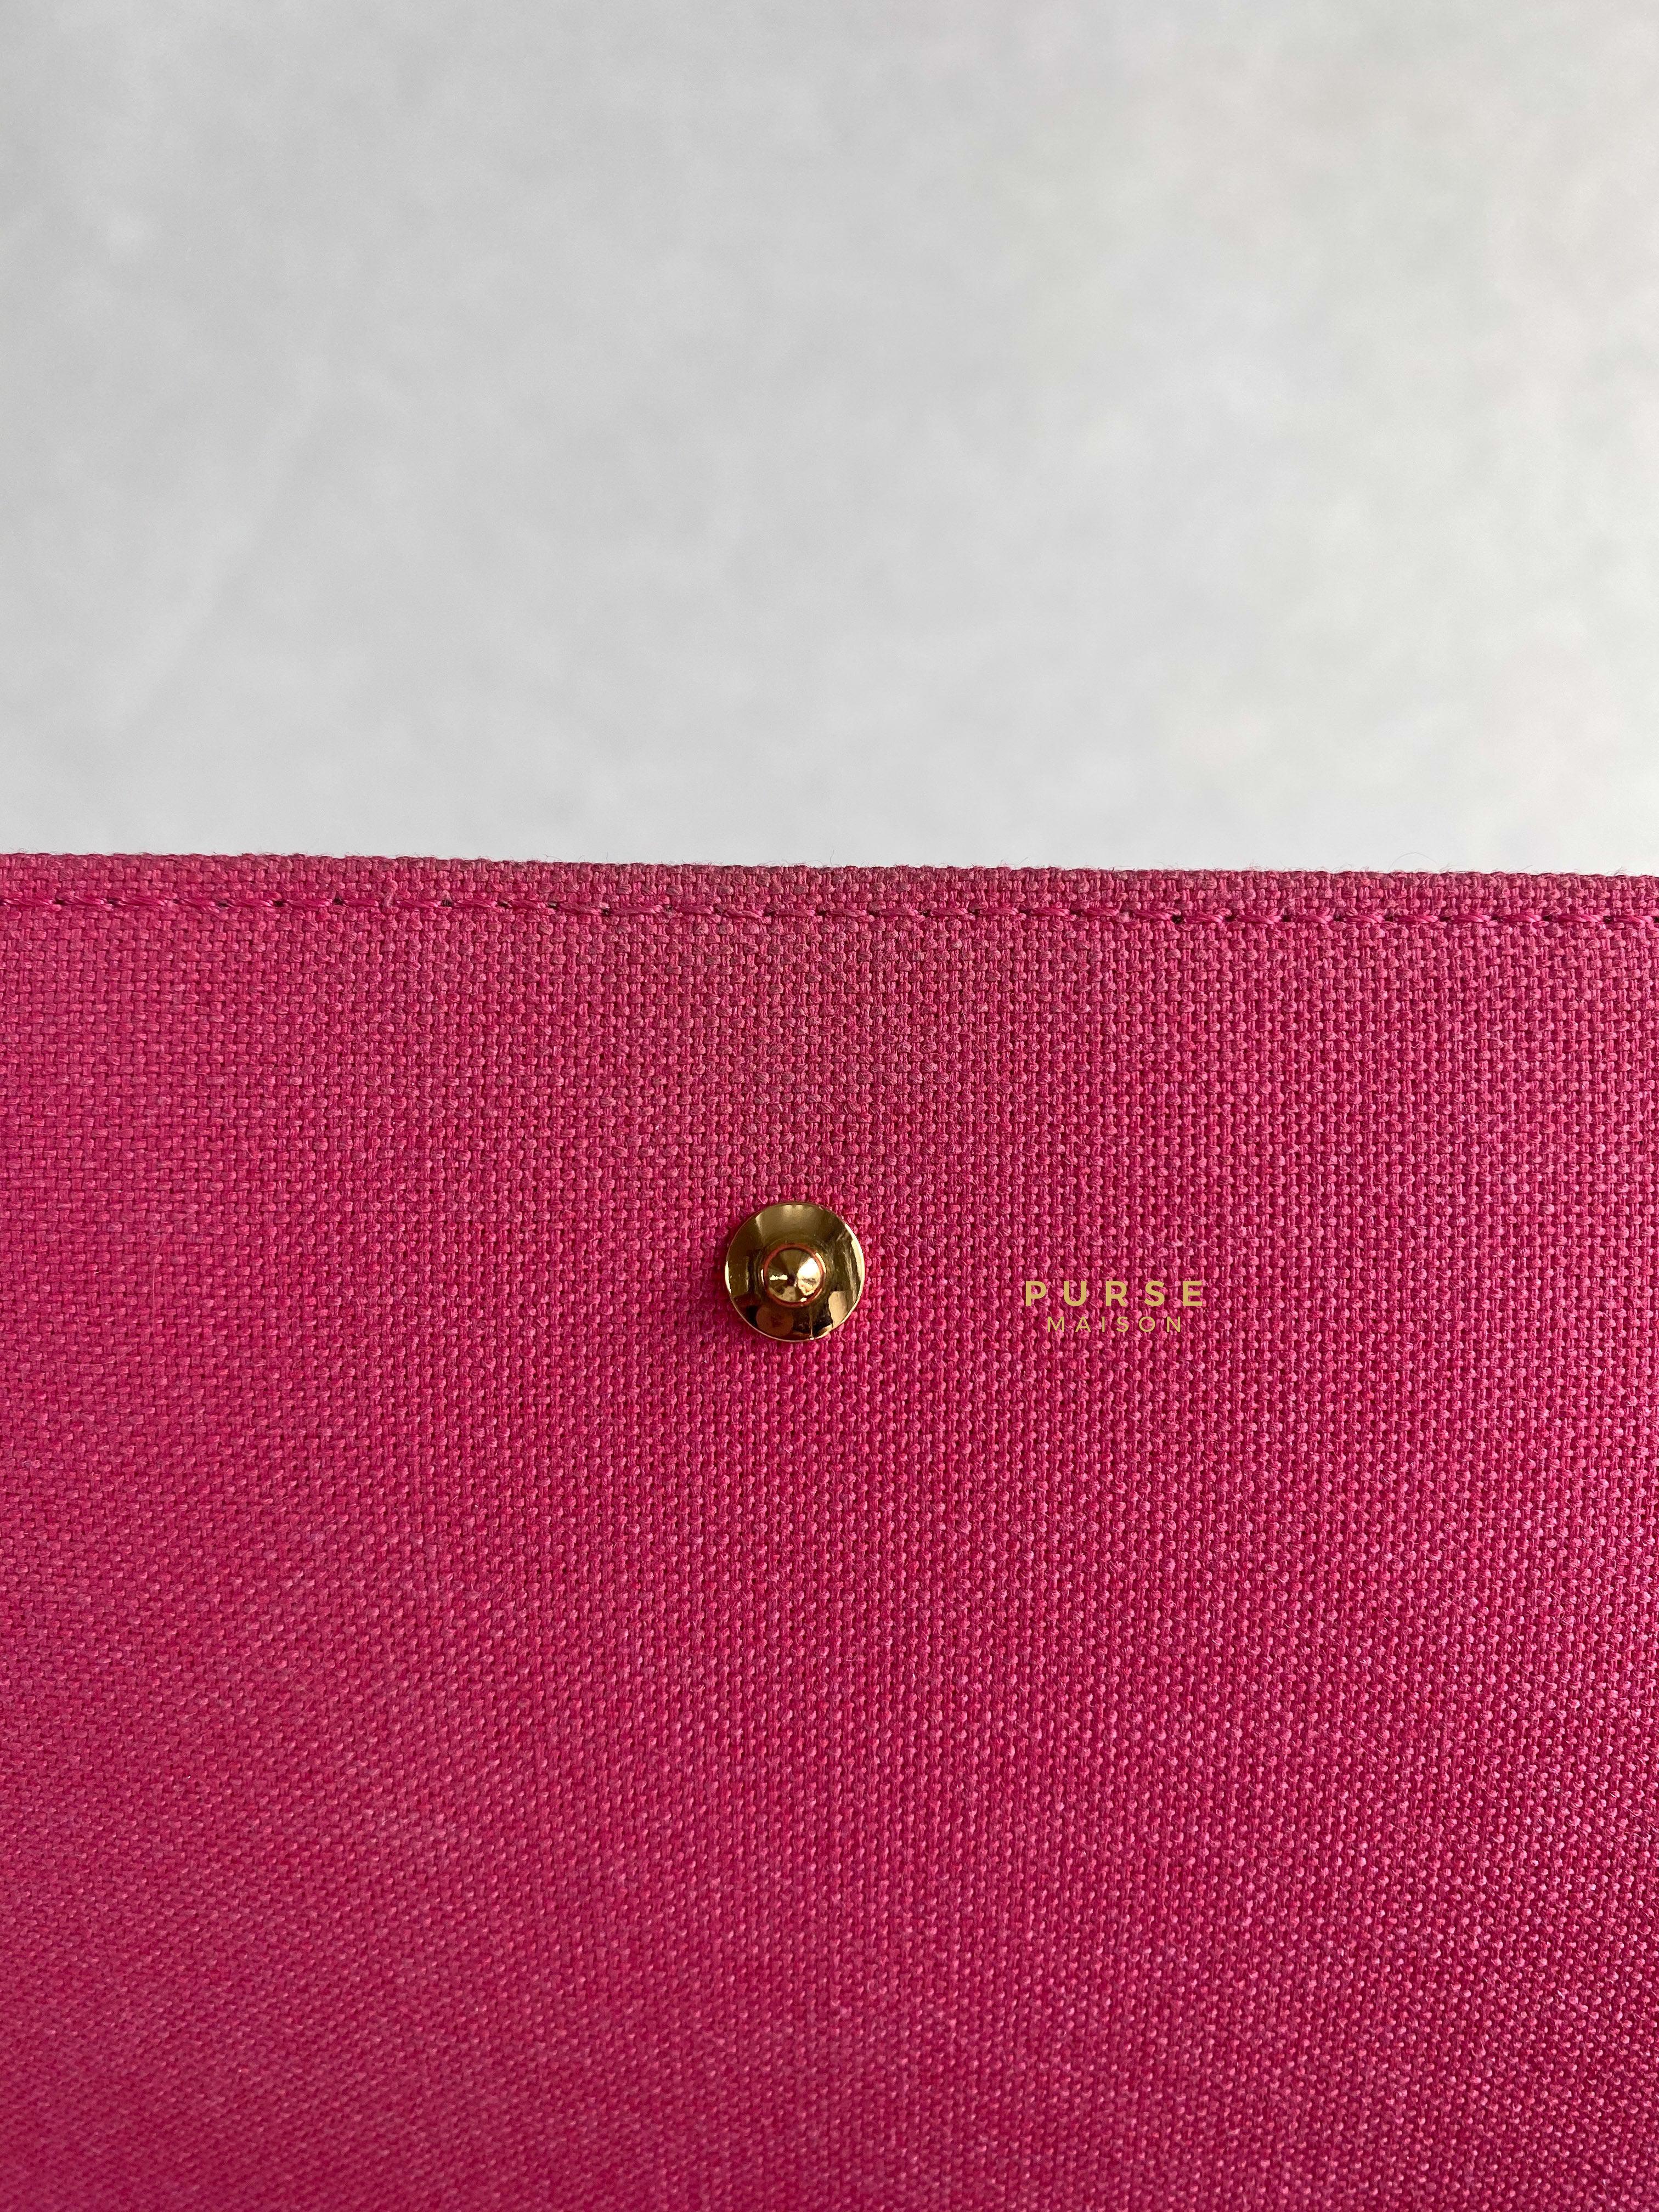 Louis Vuitton Felicie Pochette Christmas Limited Edition Monogram (Microchip) | Purse Maison Luxury Bags Shop